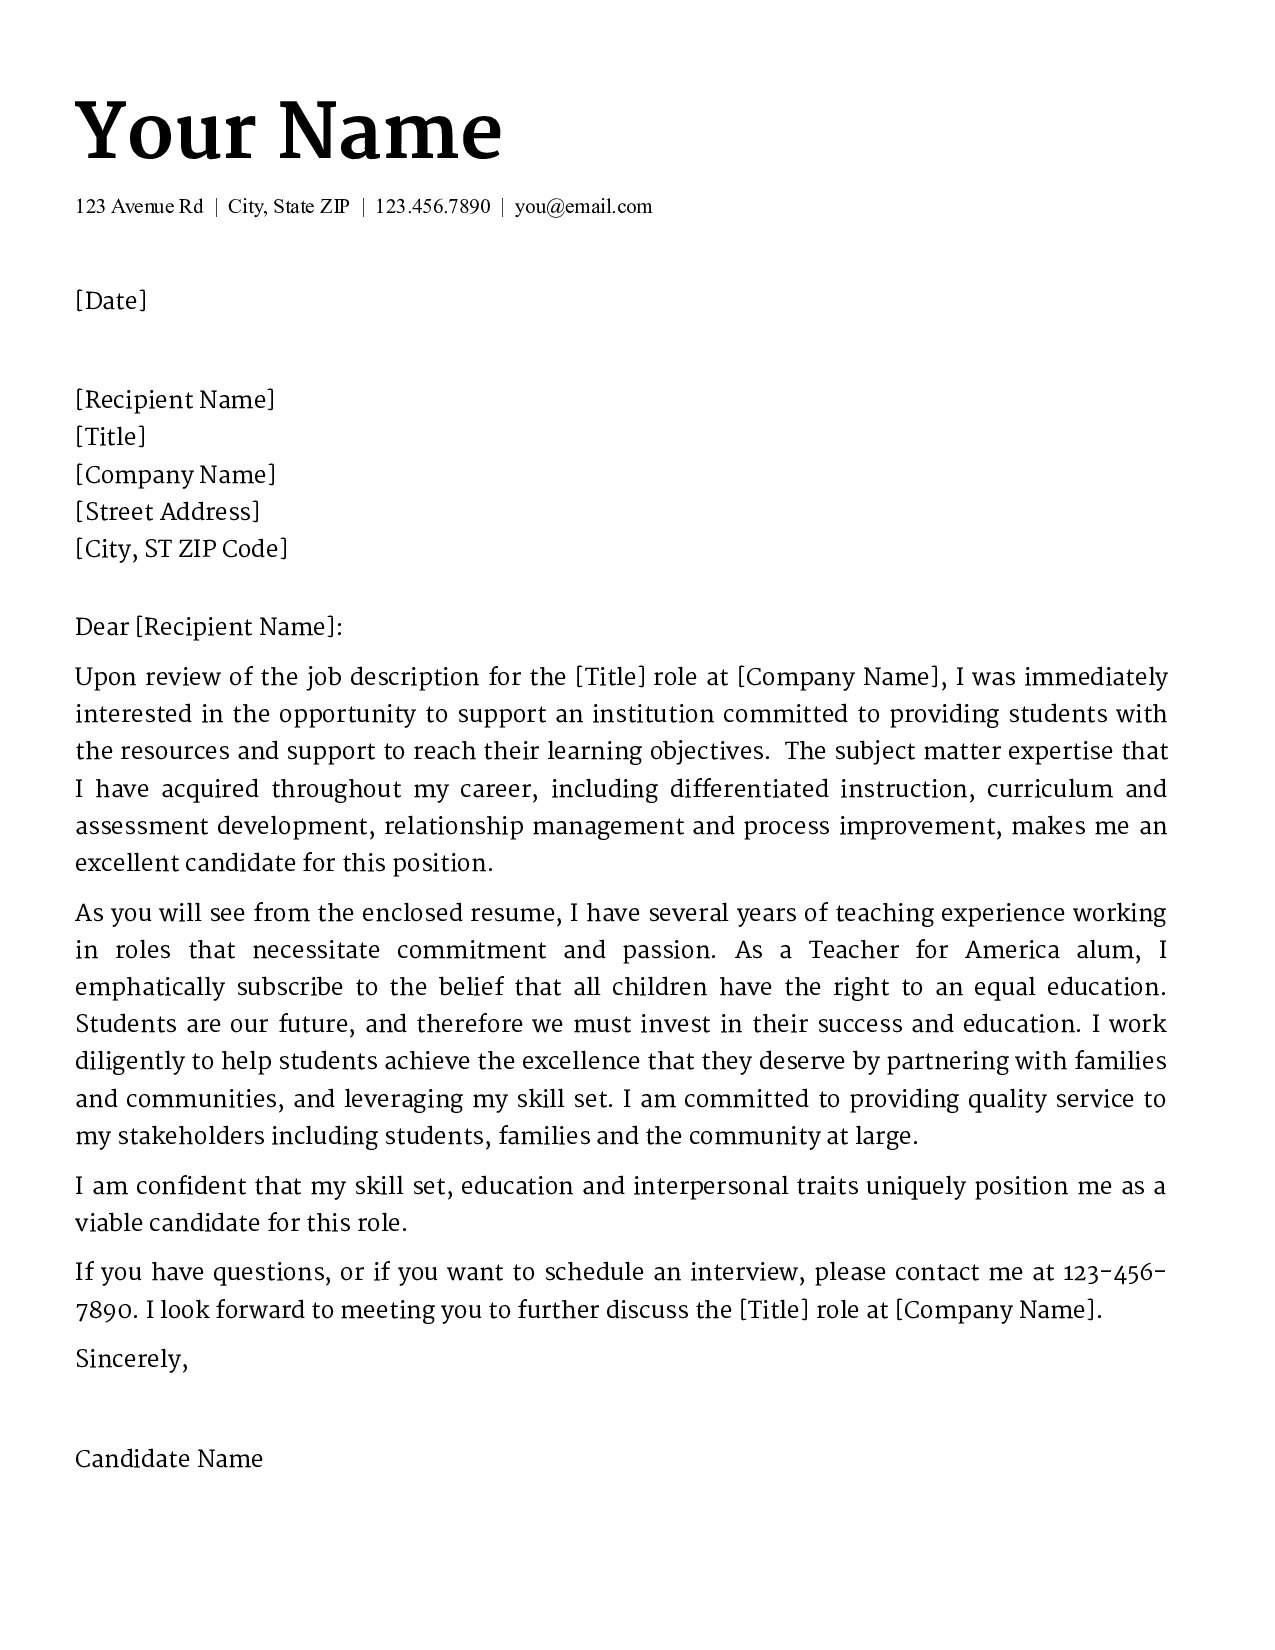 Teacher Cover Letter (1275 x 1650 Pixel)